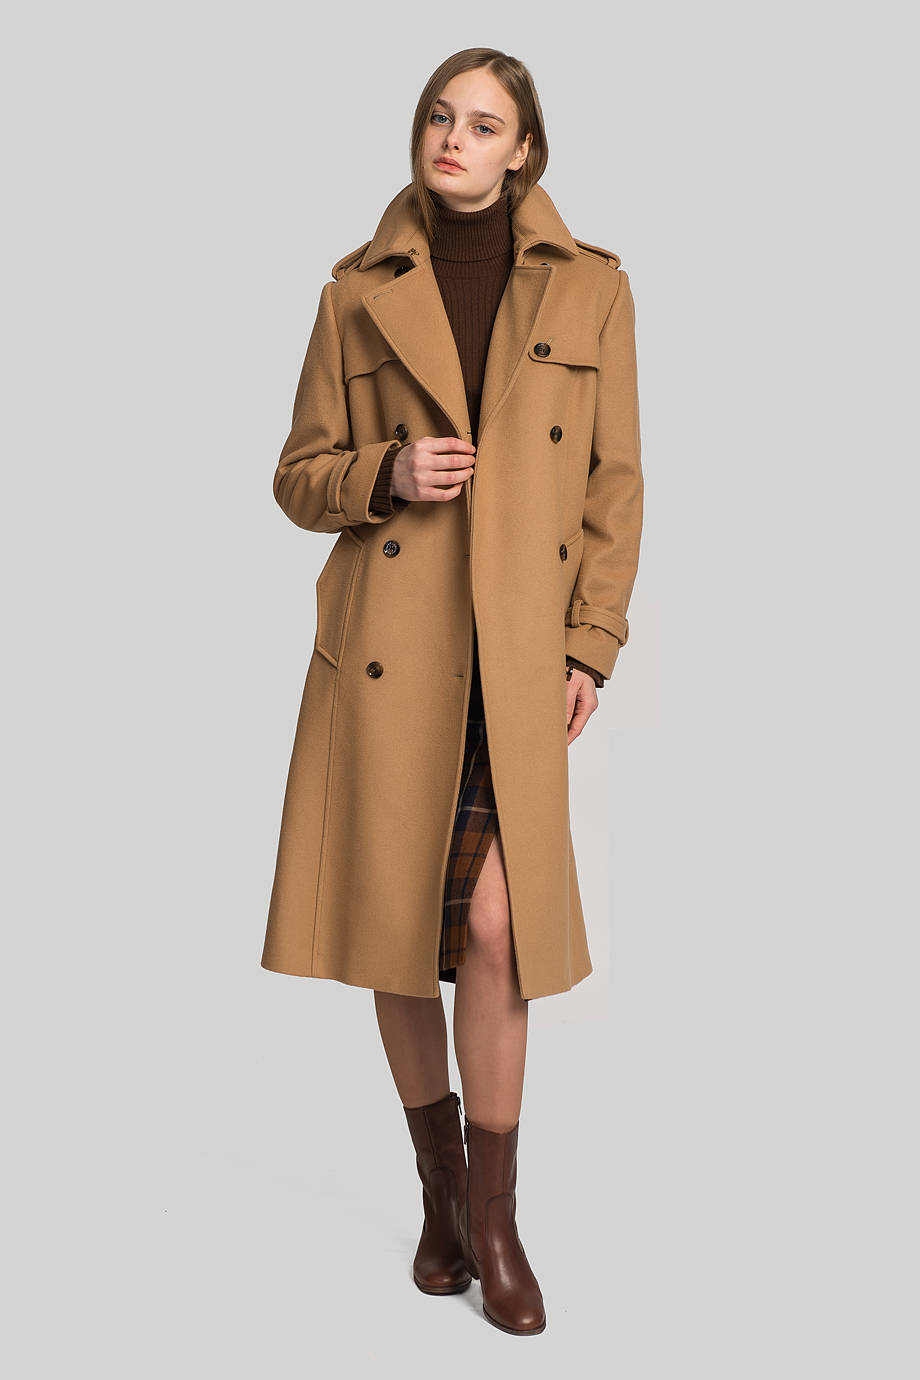 5 причин выбрать брендовые женские пальто в магазине Ostriv